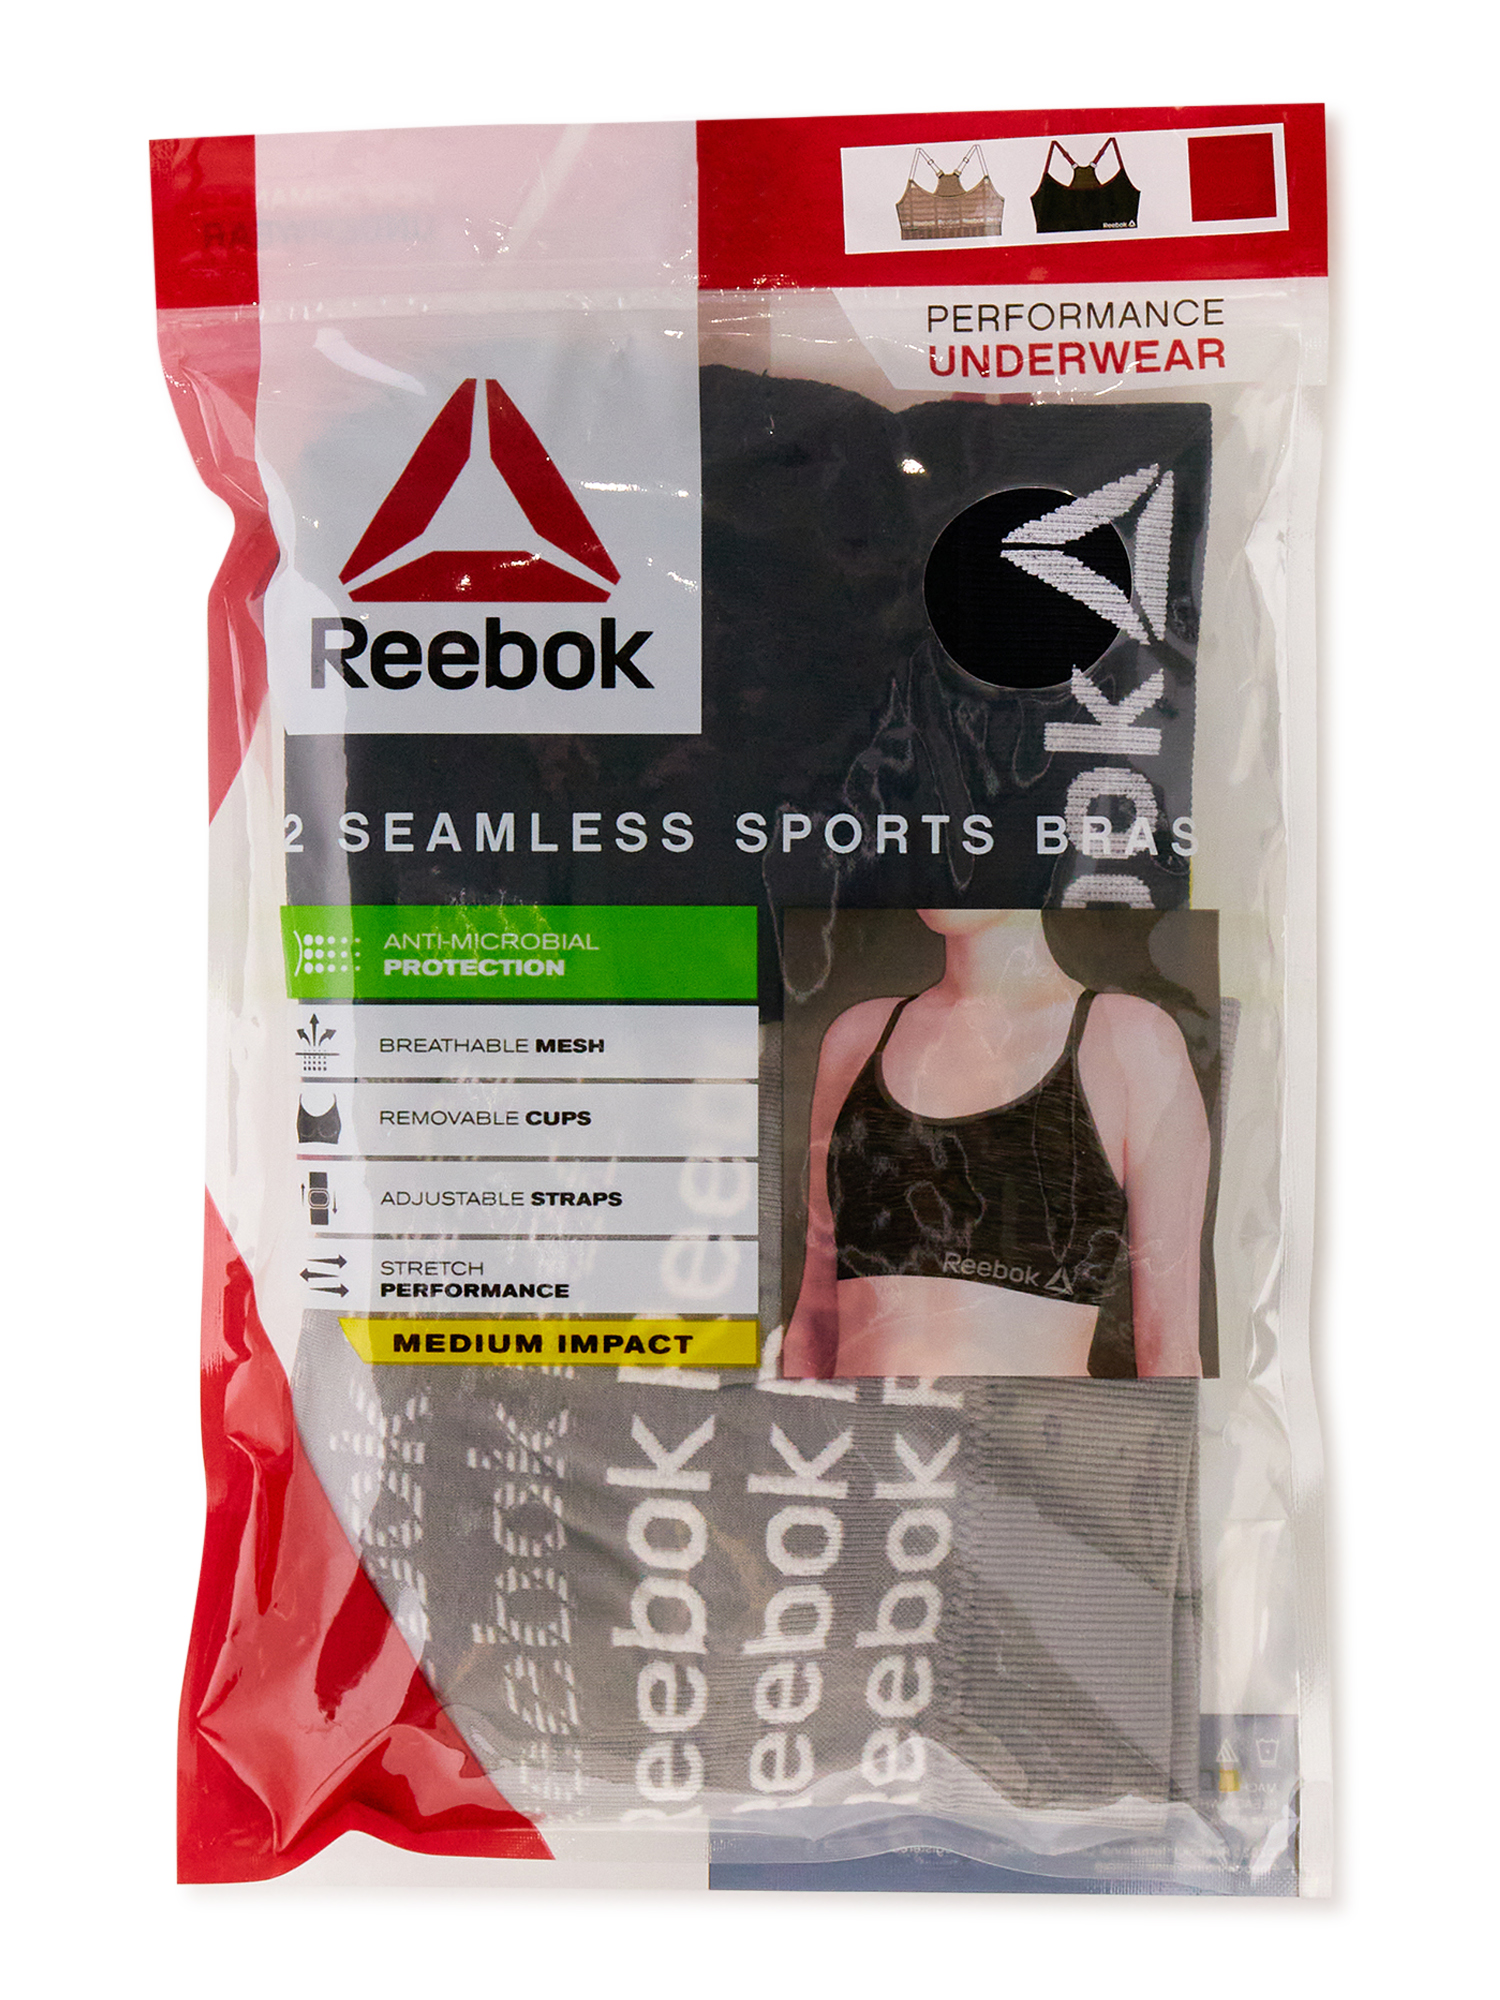 Reebok Women's Sports Bra, 2 Pack - image 3 of 7